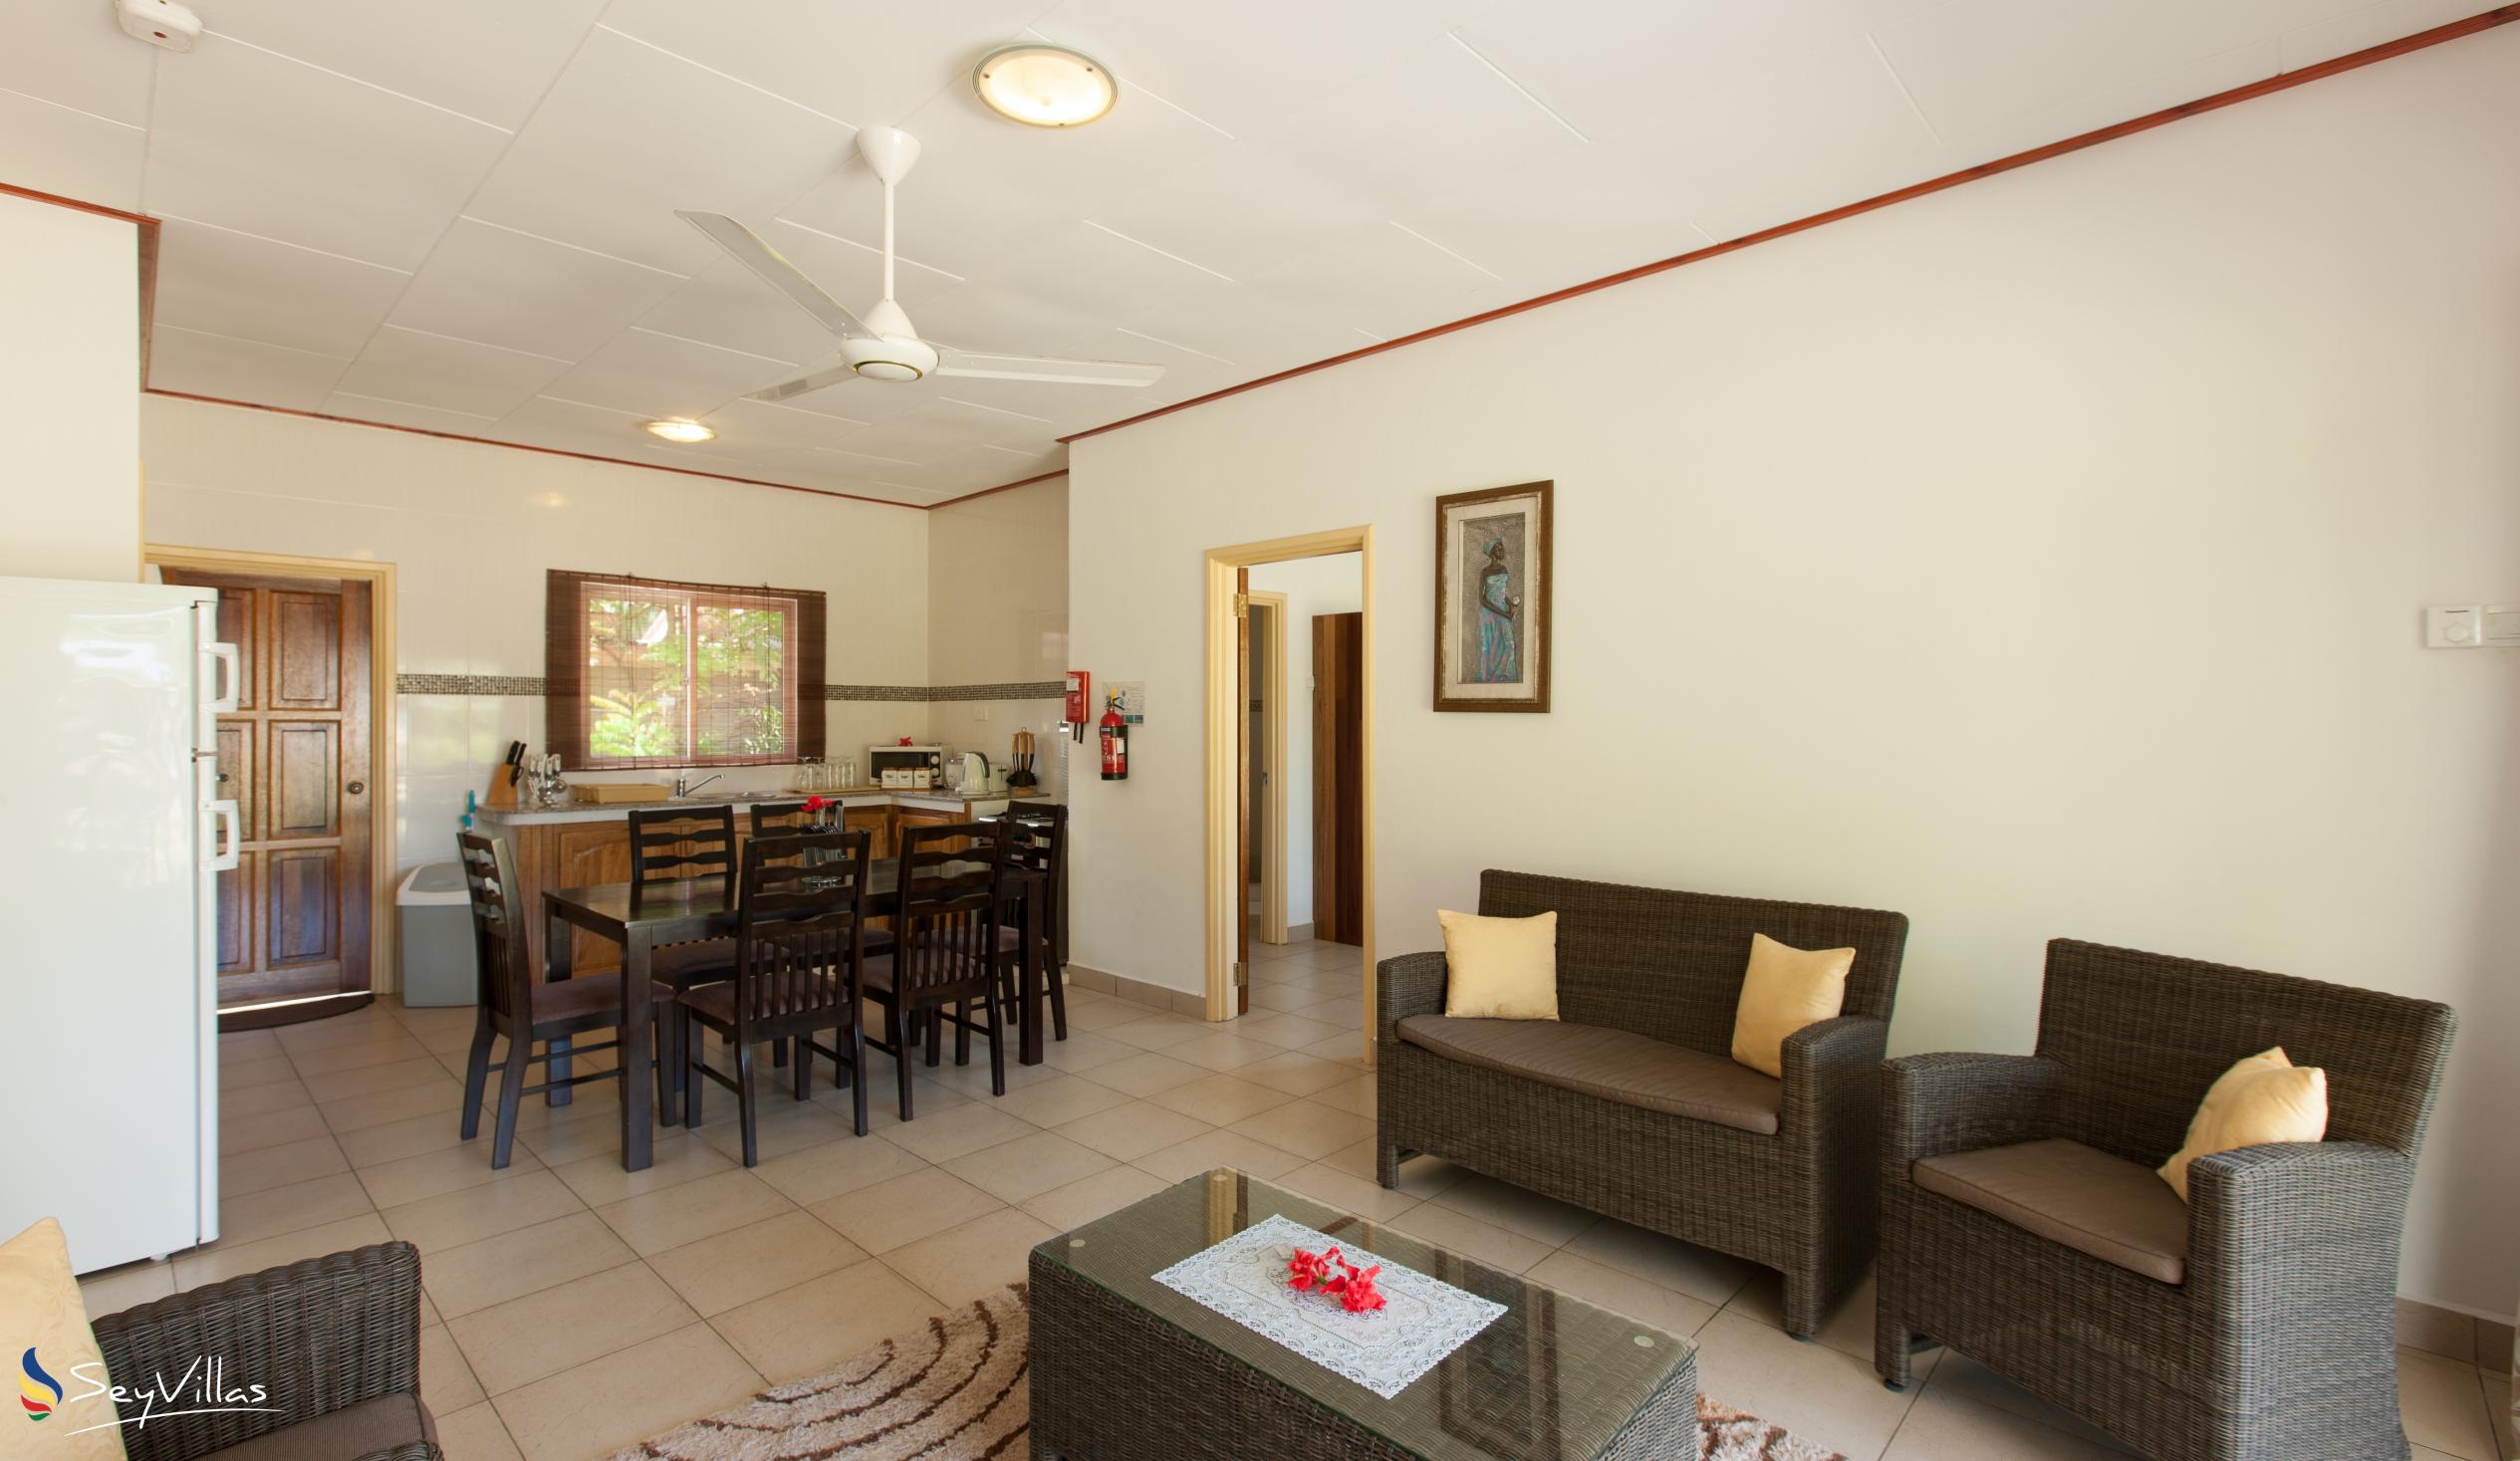 Foto 38: Hostellerie La Digue - Chalet mit 2 Schlafzimmern - La Digue (Seychellen)